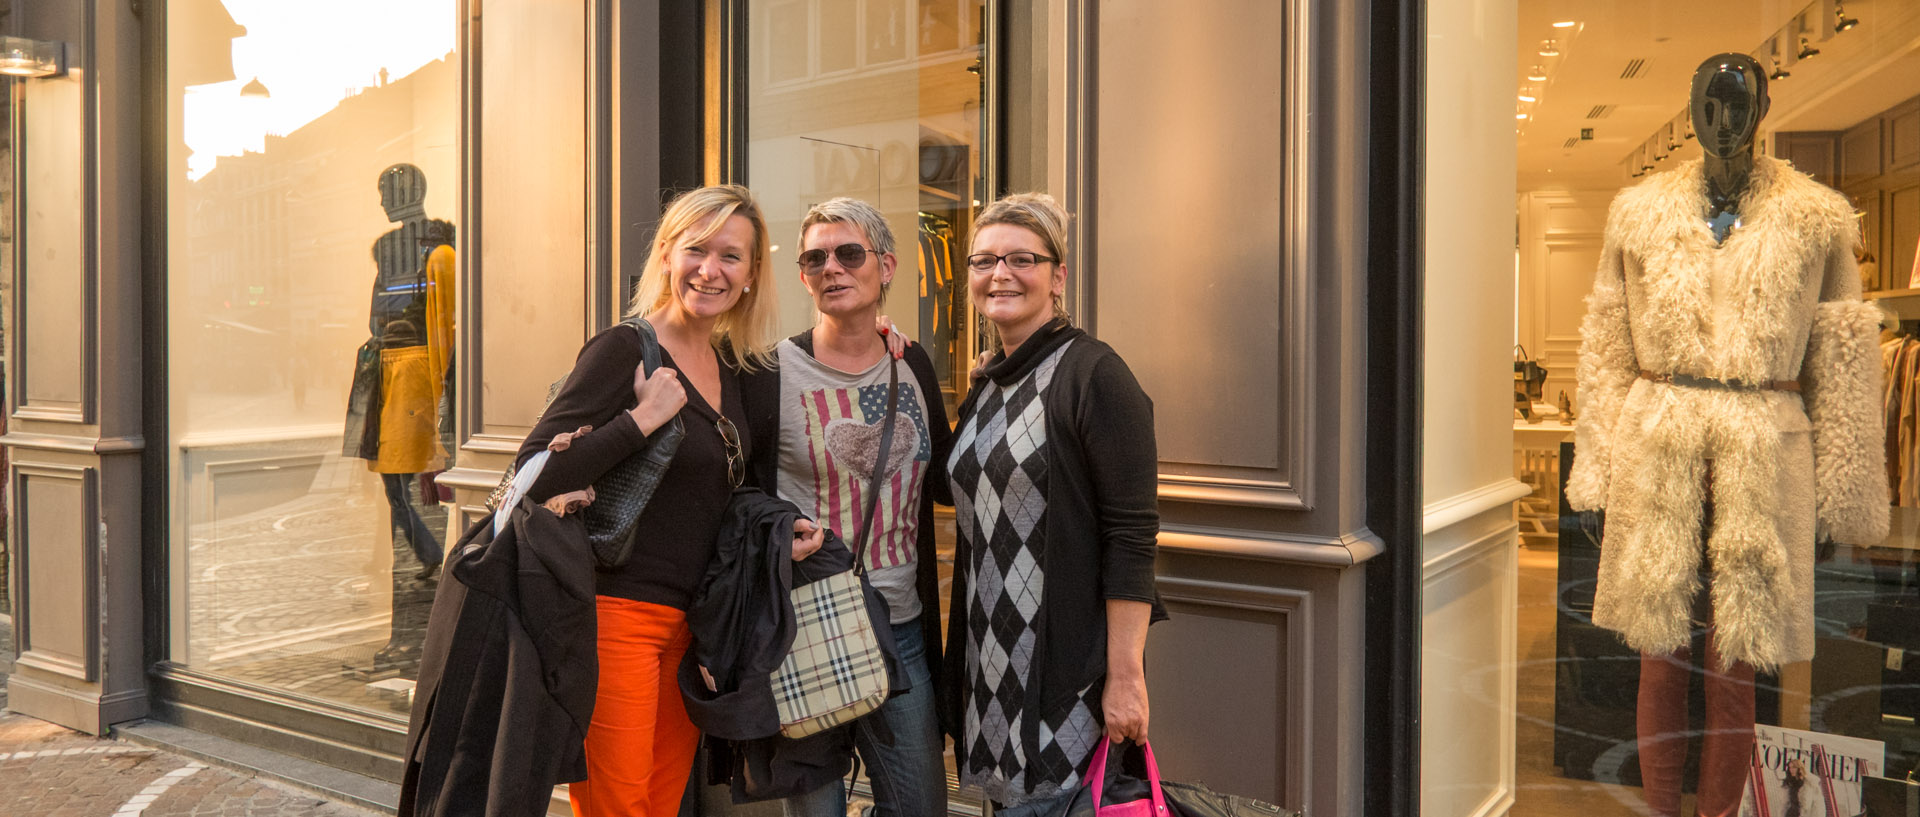 Trois femmes devant une boutique de mode, rue de la Vieille Comédie, à Lille.